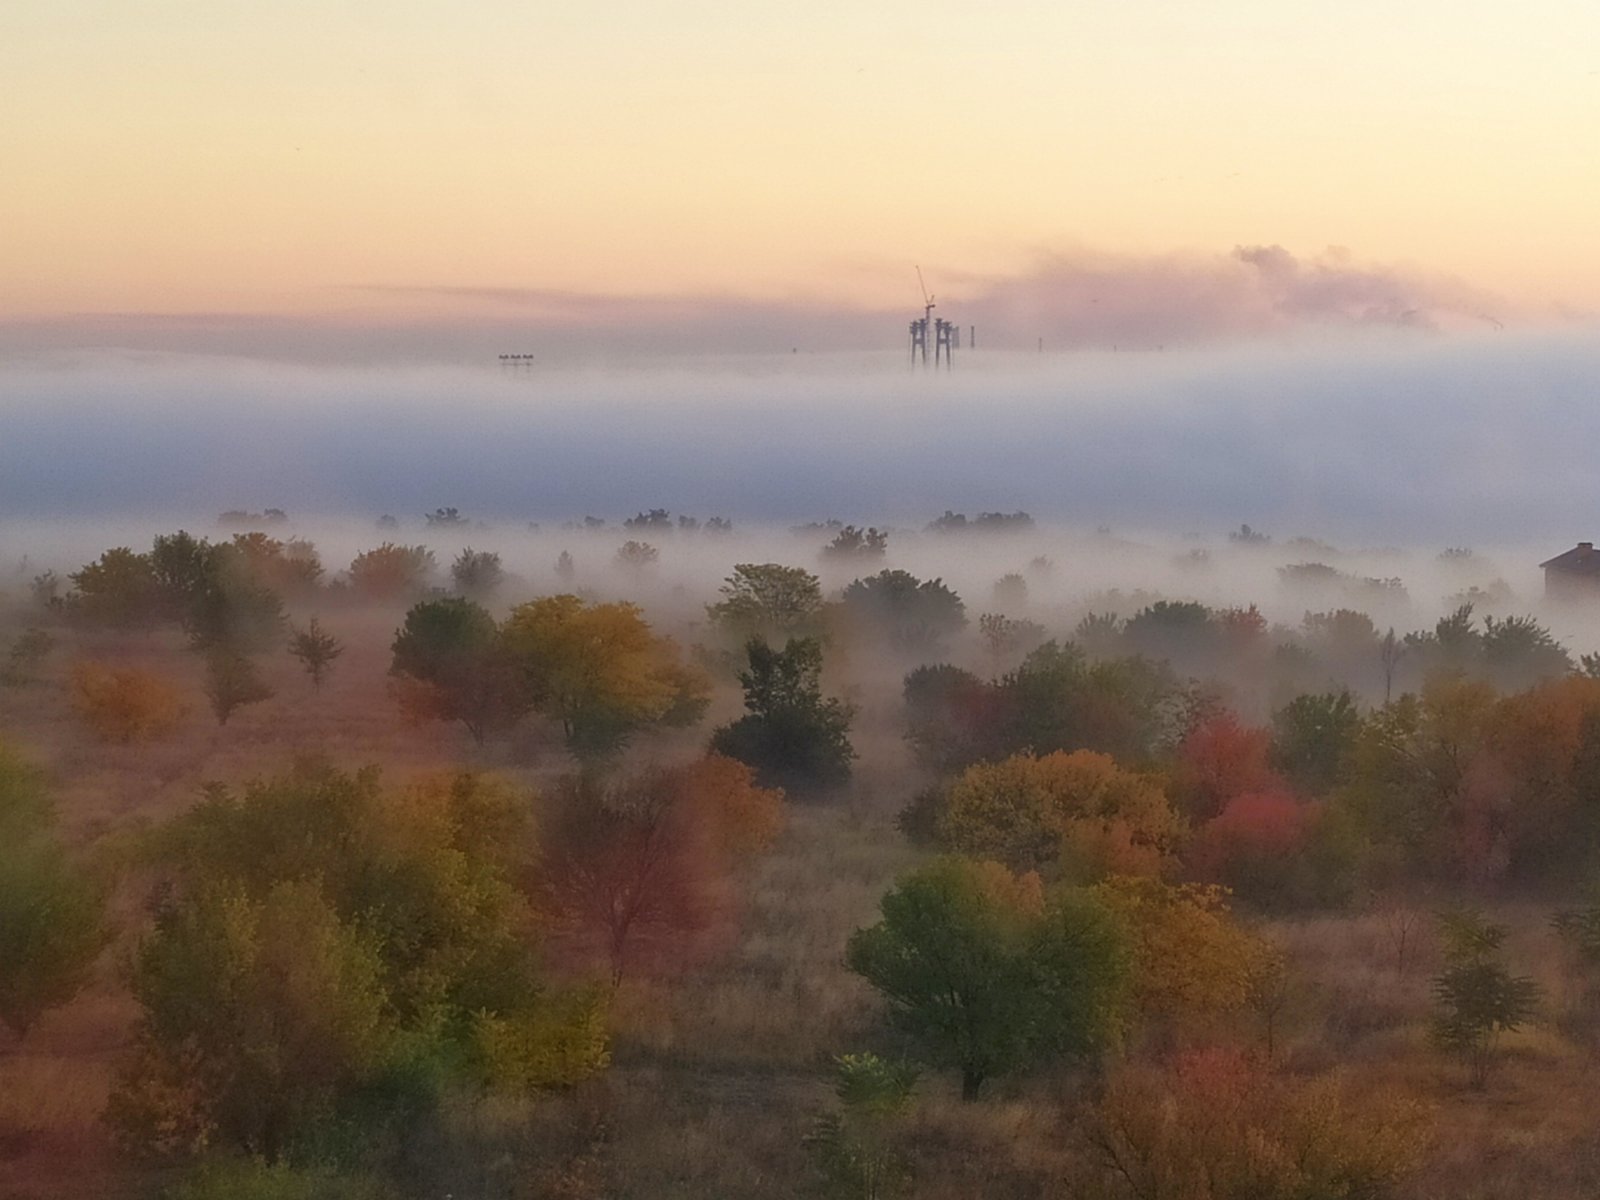 “Туманный Альбион”: запорожцы делятся в соцсети снимками красивейшего утра в городе